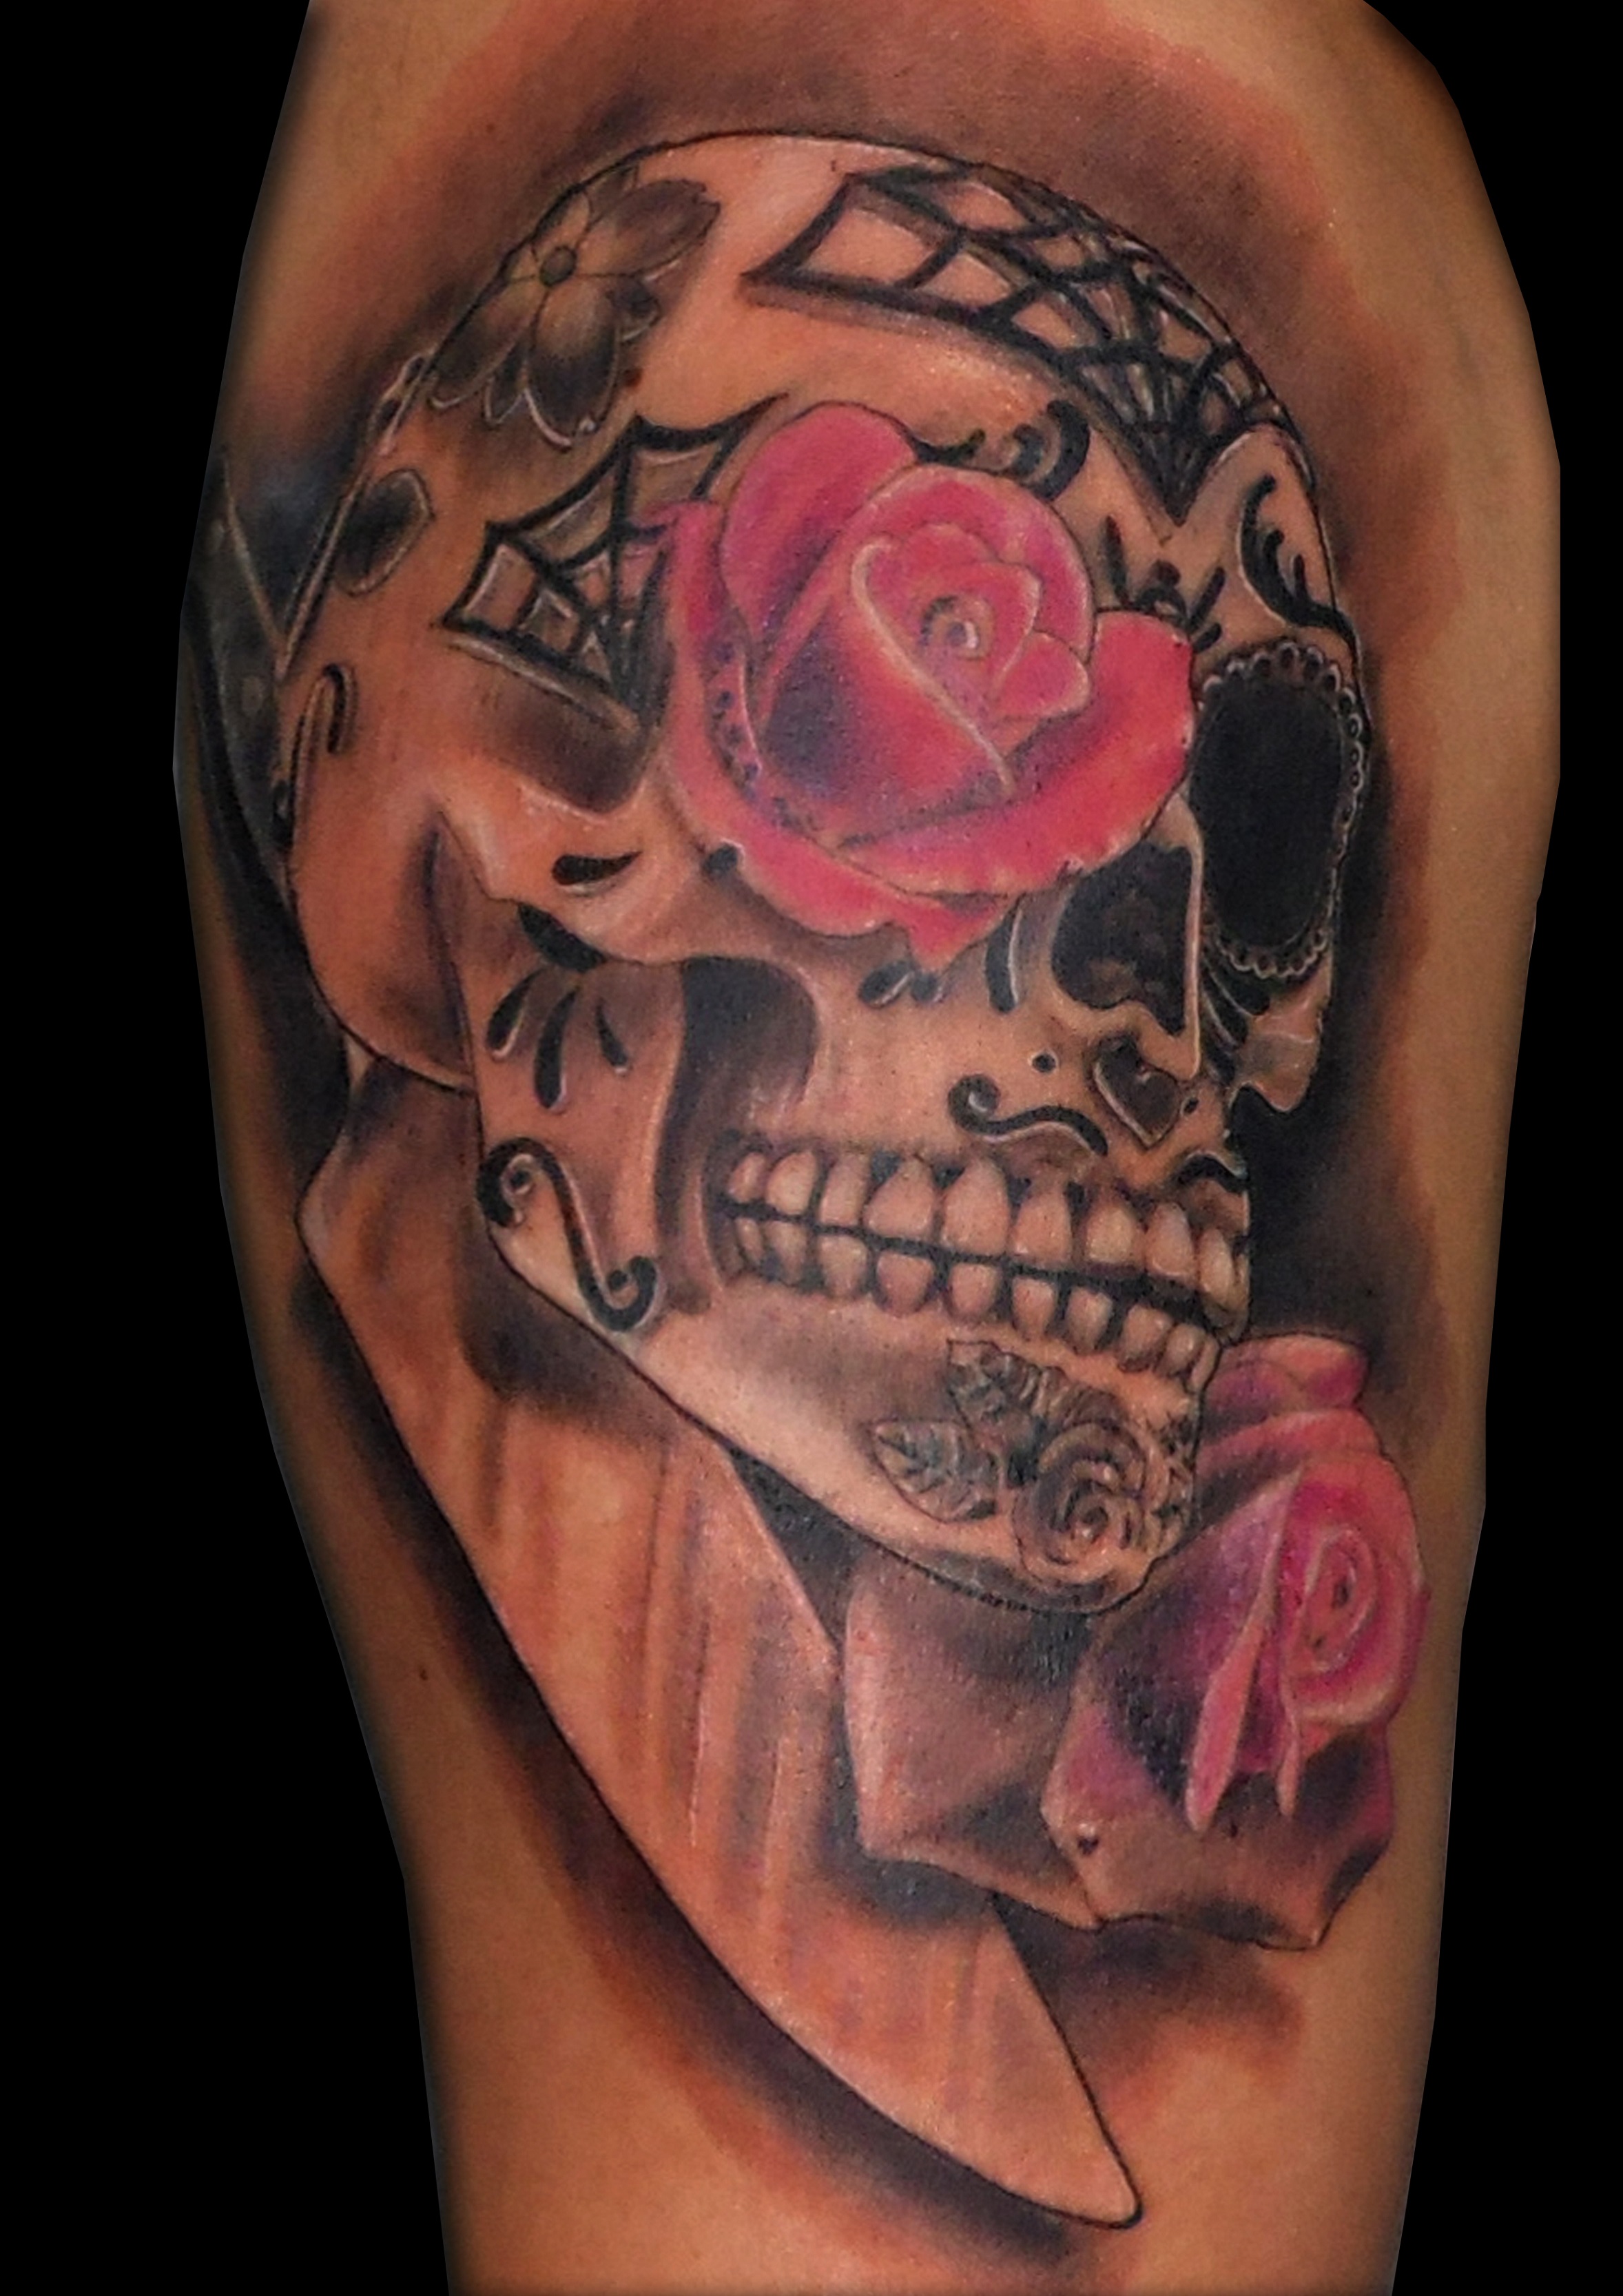 calavera rosas tatuaje tattoo brazo hombro cuchillo cocinero calavera mexicana sombras color 13depicas jaca